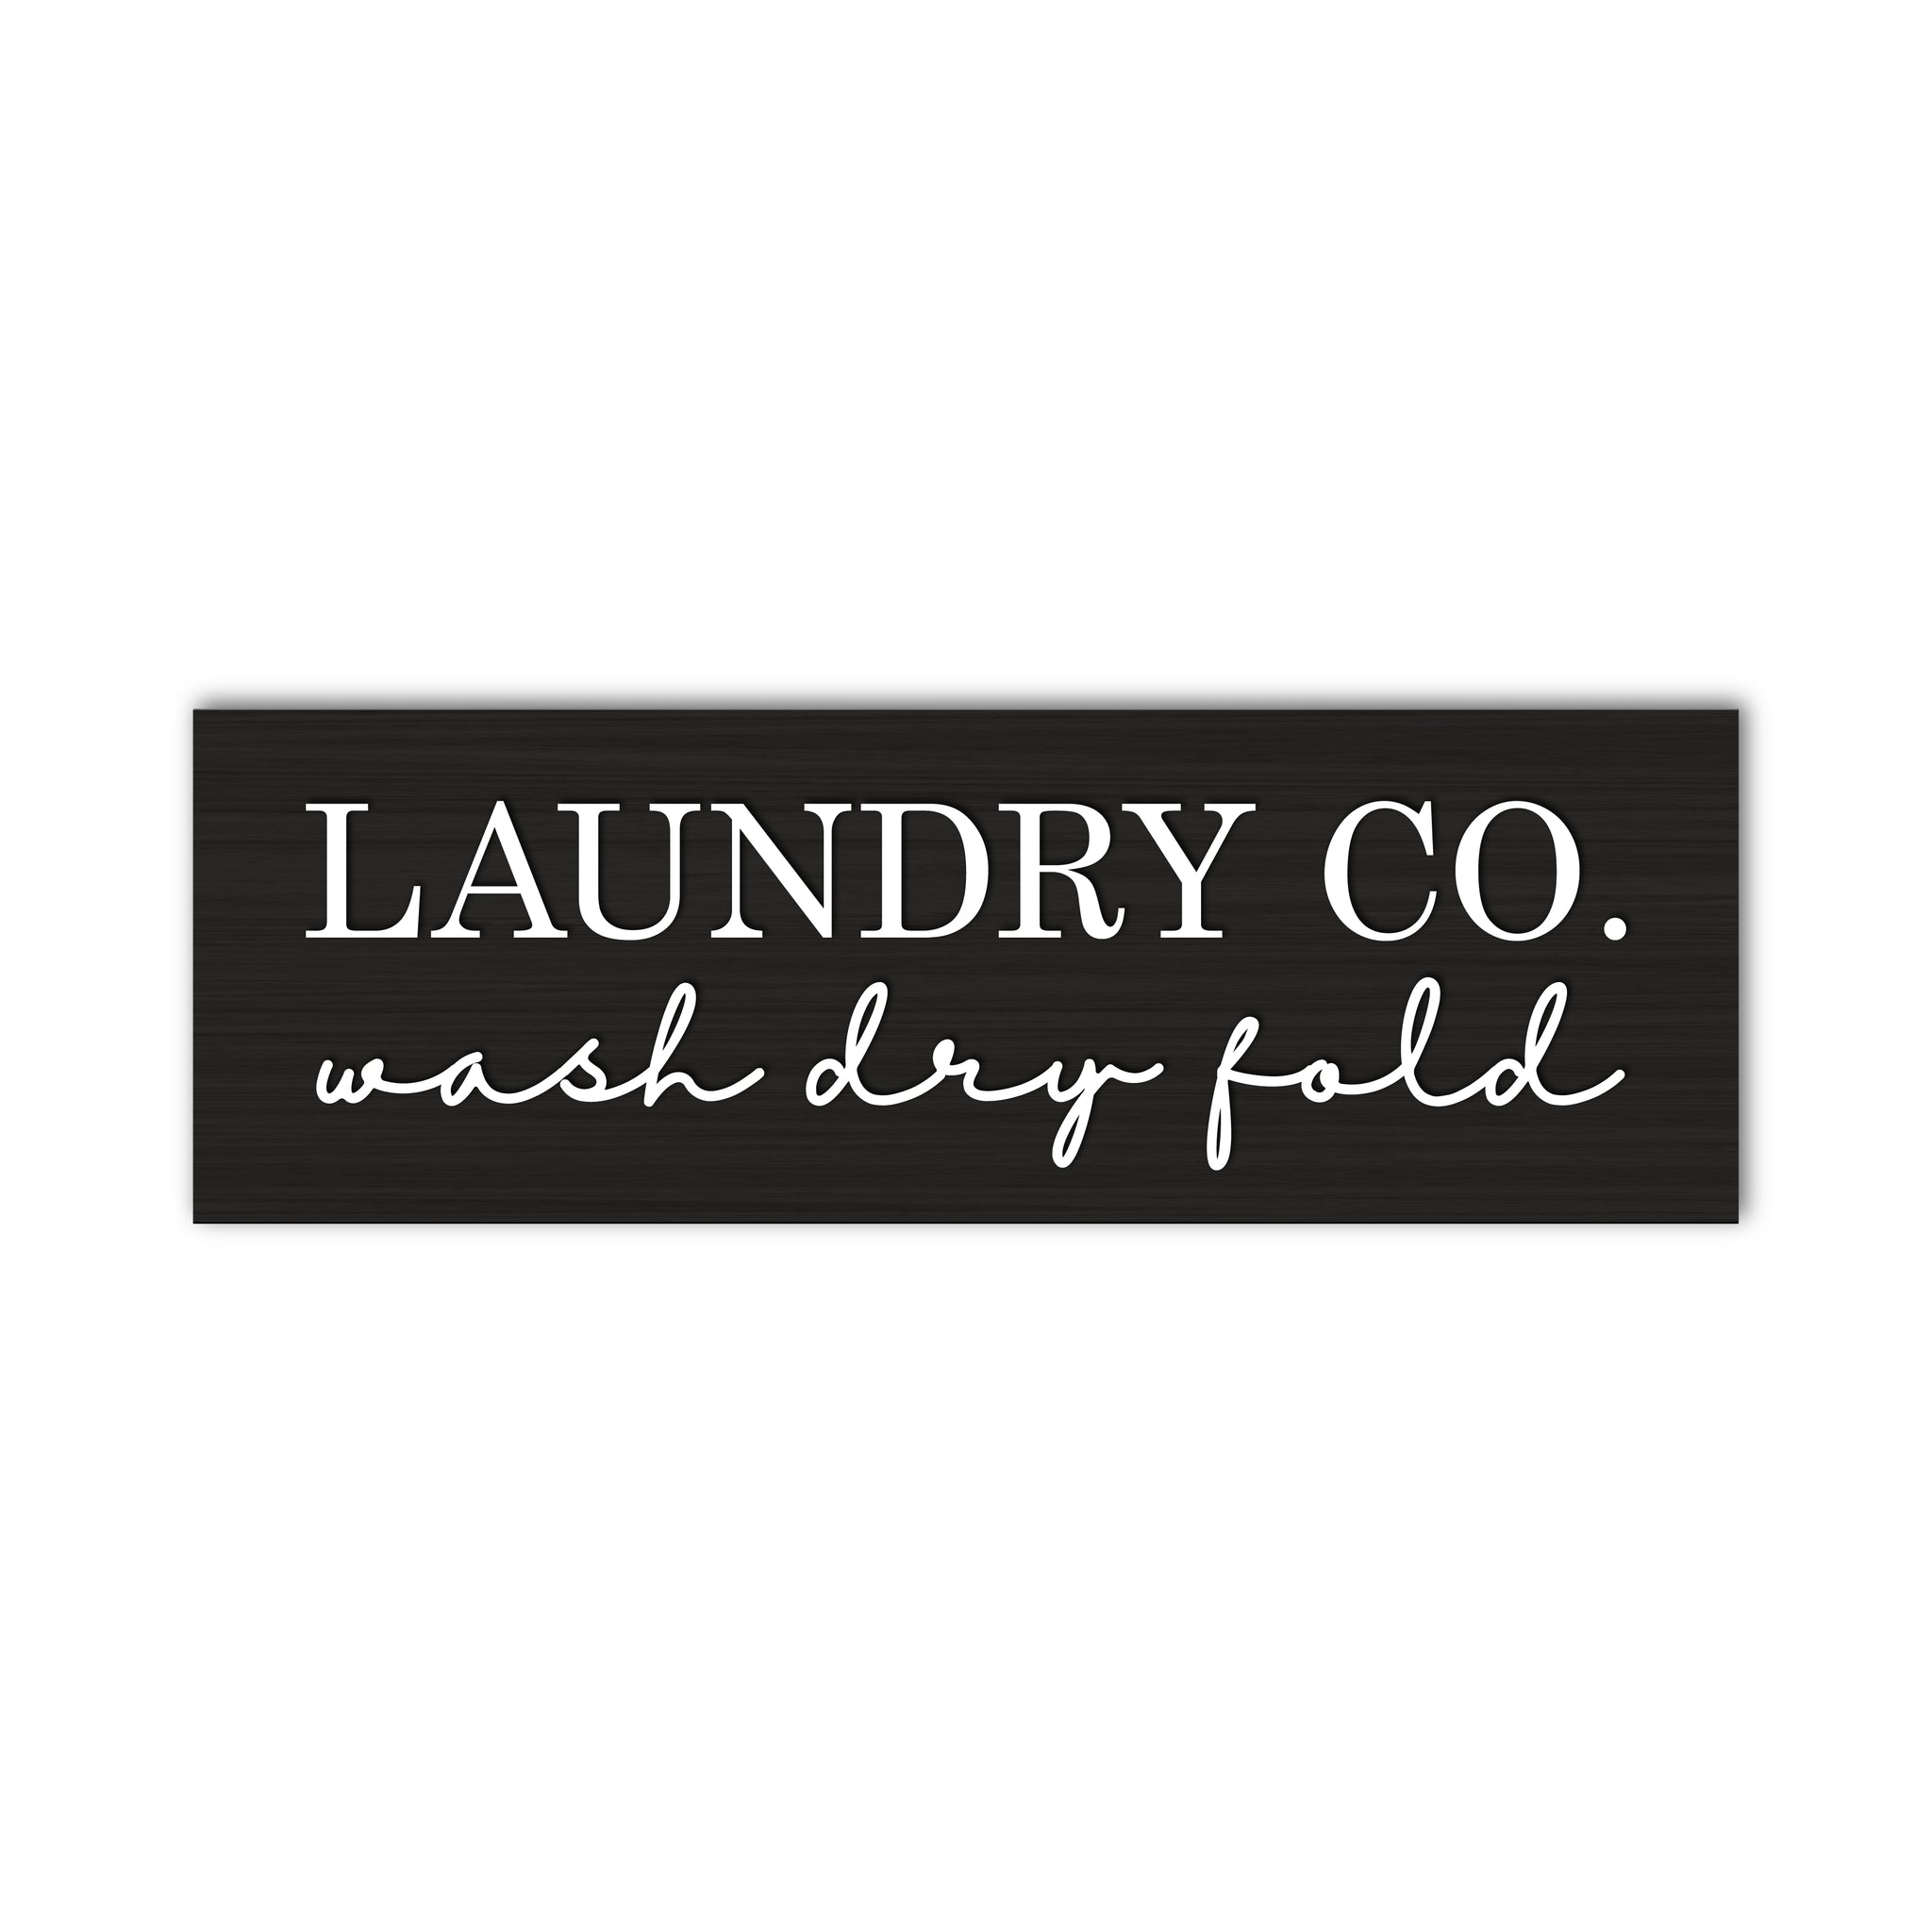 Laundry Co. Wash Dry Fold